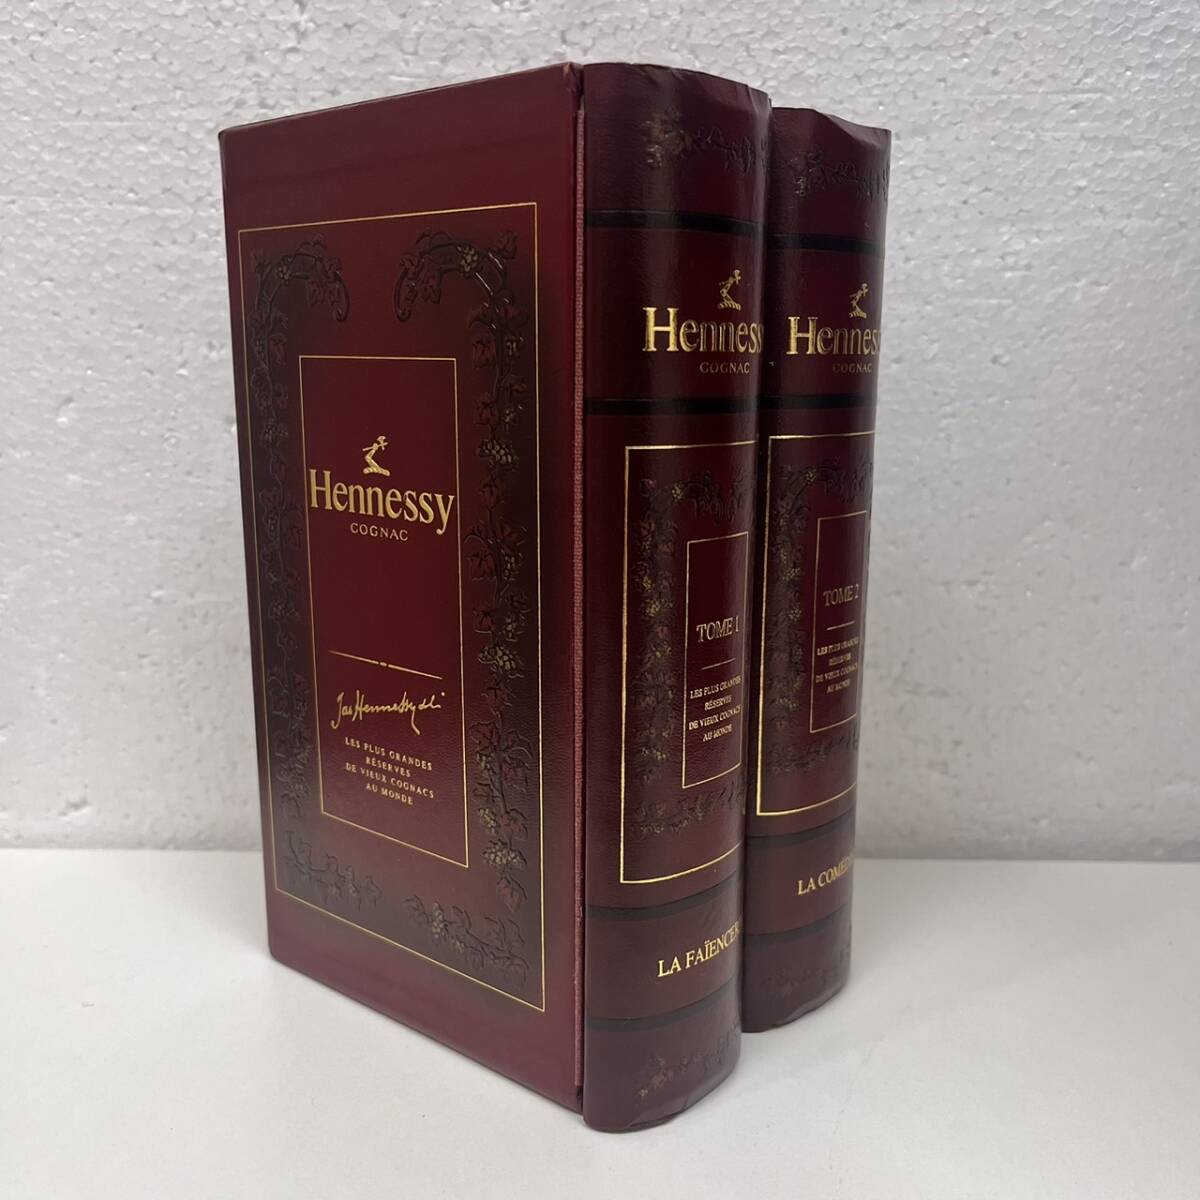 [C-24919] Hennessy красный книжка библиотека te Canter Gold верх 700ml 40% коробка коньяк редкость Hennessey не . штекер хранение товар 